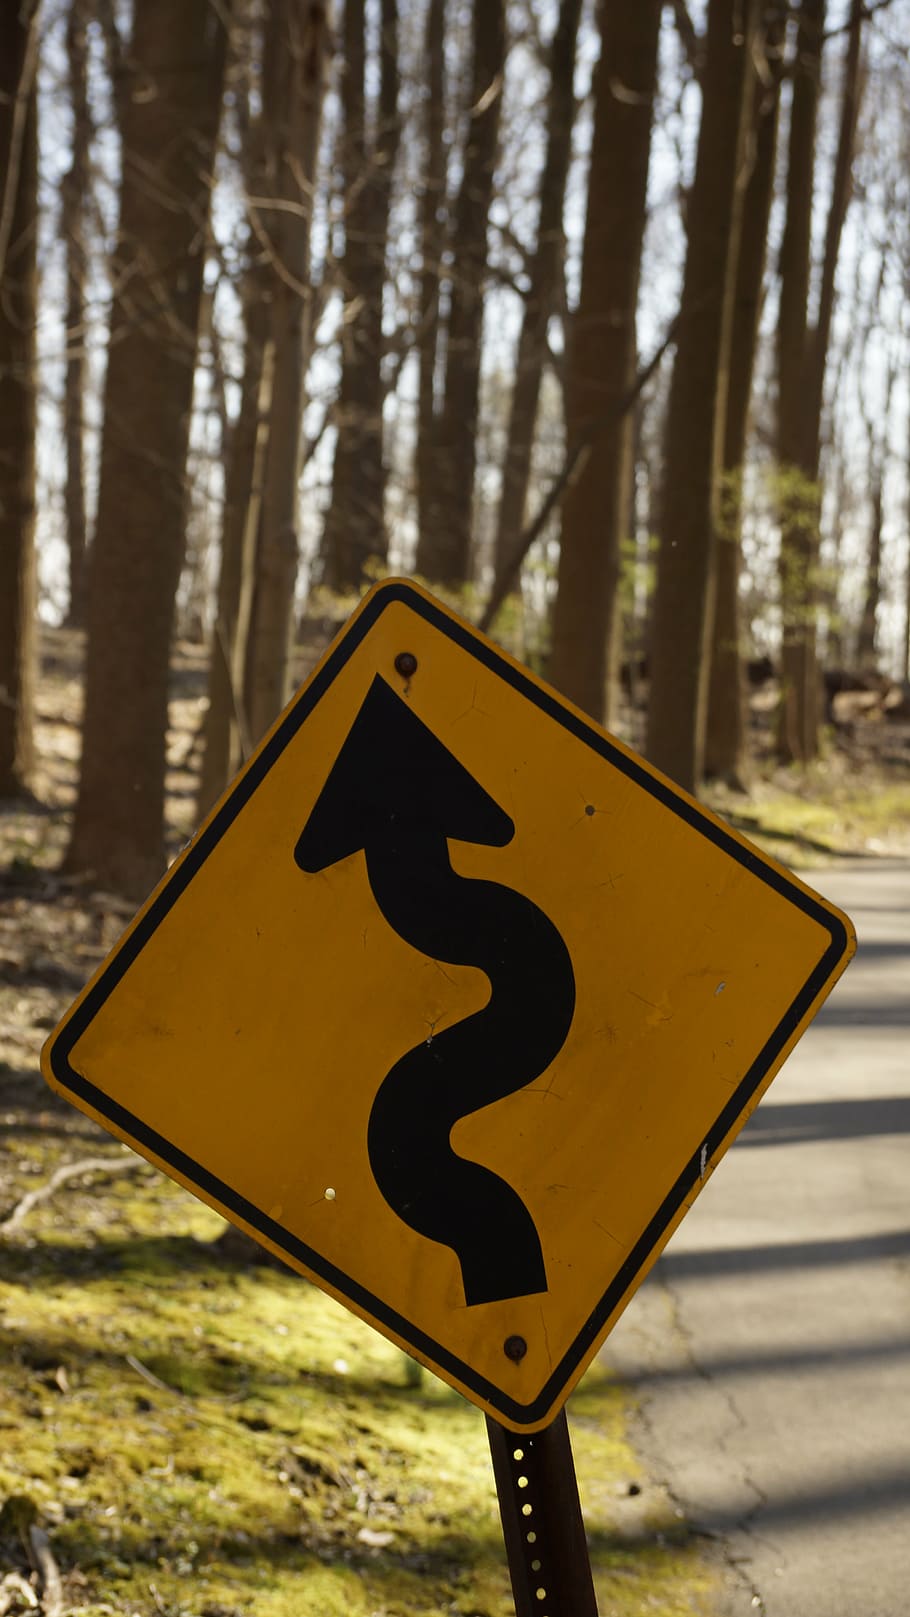 tanda, jalan, kuning, melengkung, peringatan, bahaya, tanda jalan, roadsign, kayu, jalur sepeda